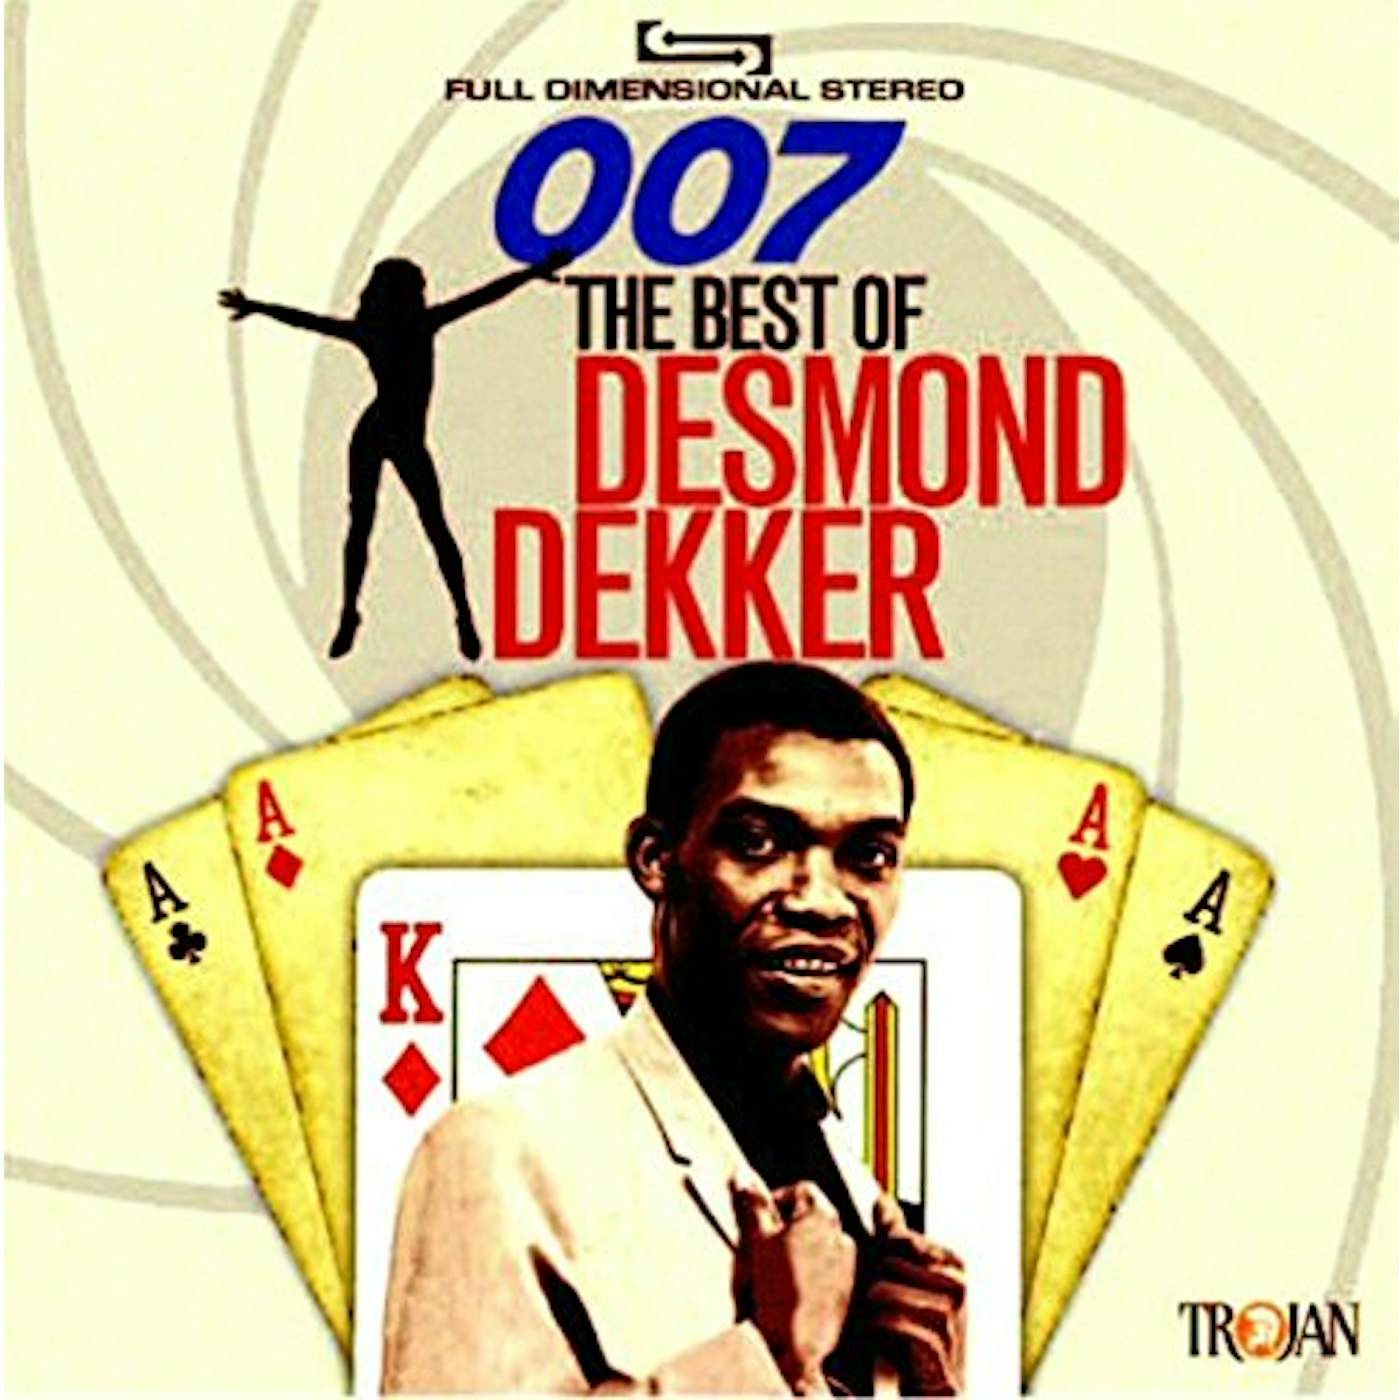 007: THE BEST OF DESMOND DEKKER CD